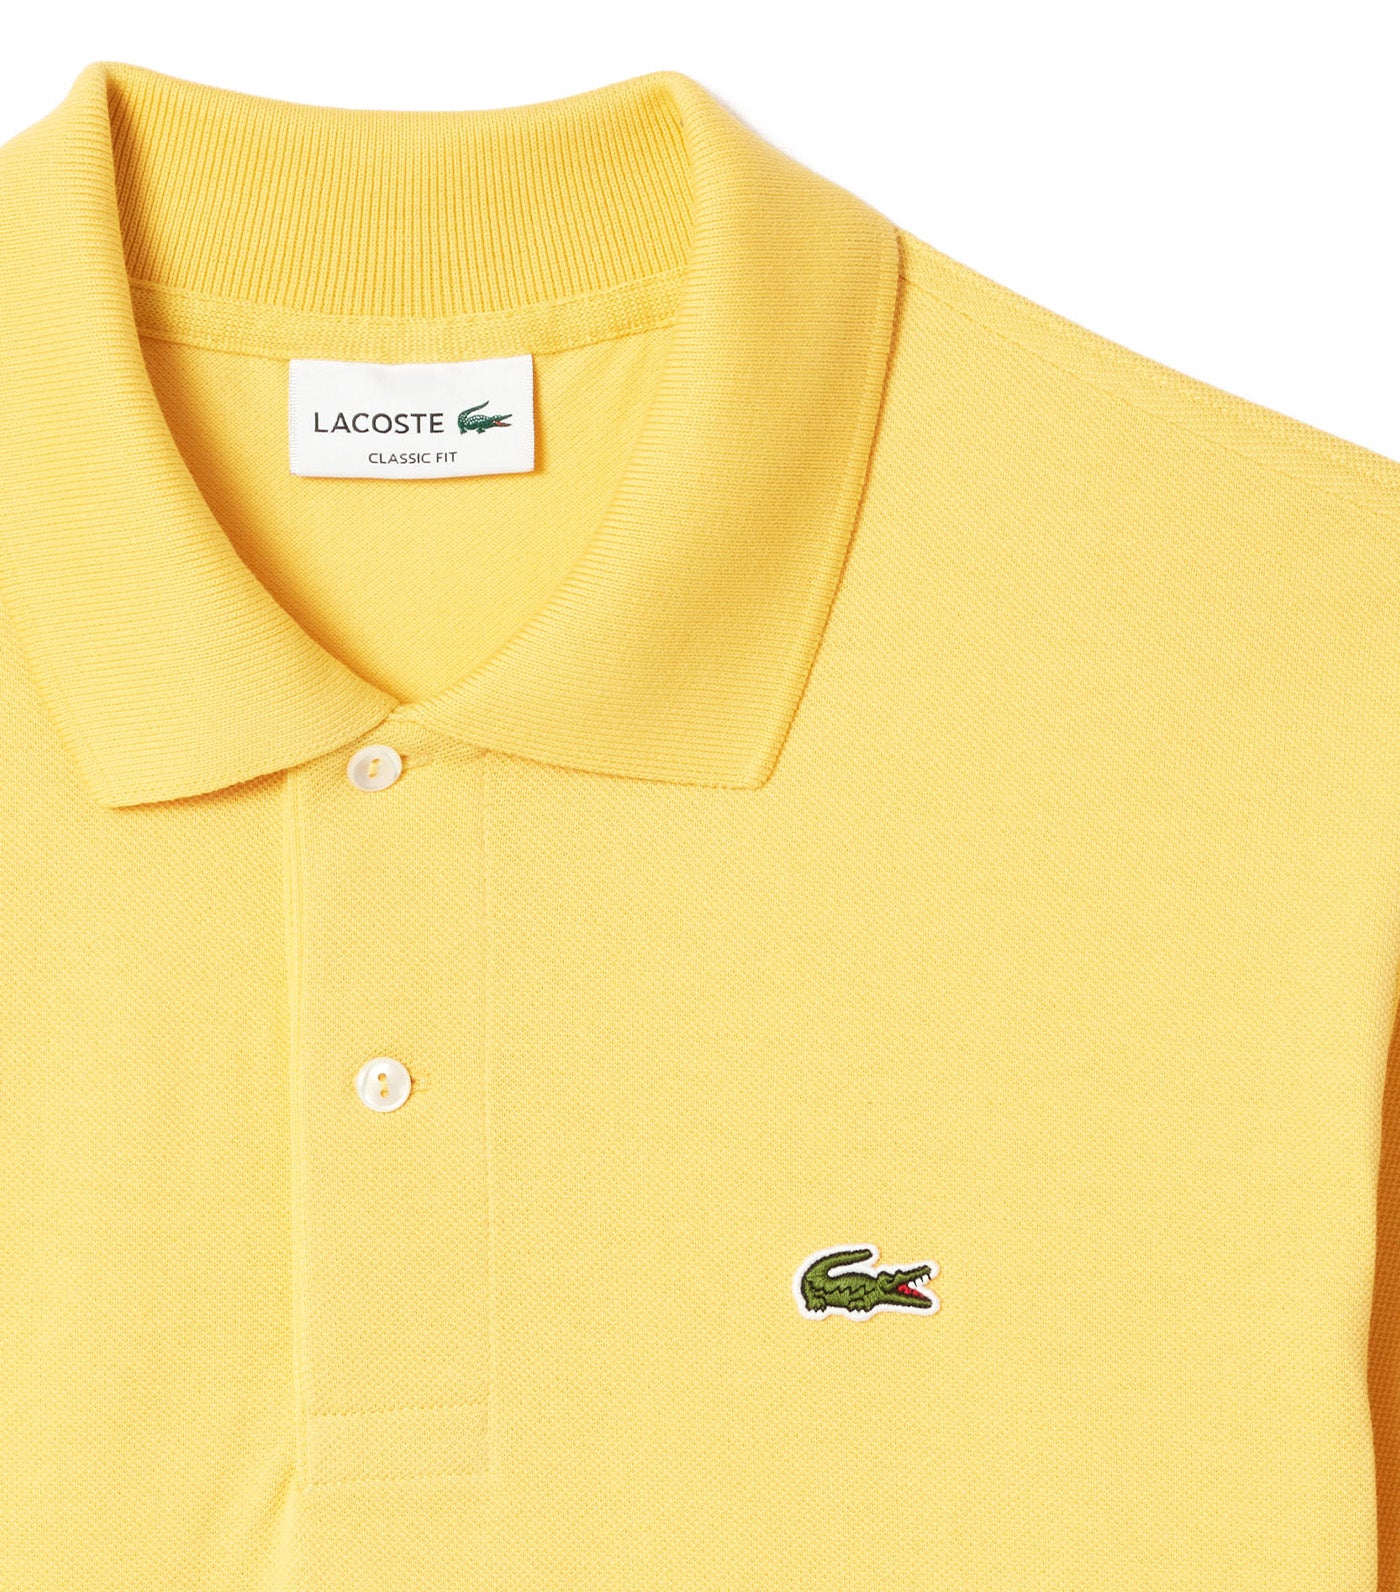 Lacoste Classic Fit L.12.12 Polo Shirt Cornsilk